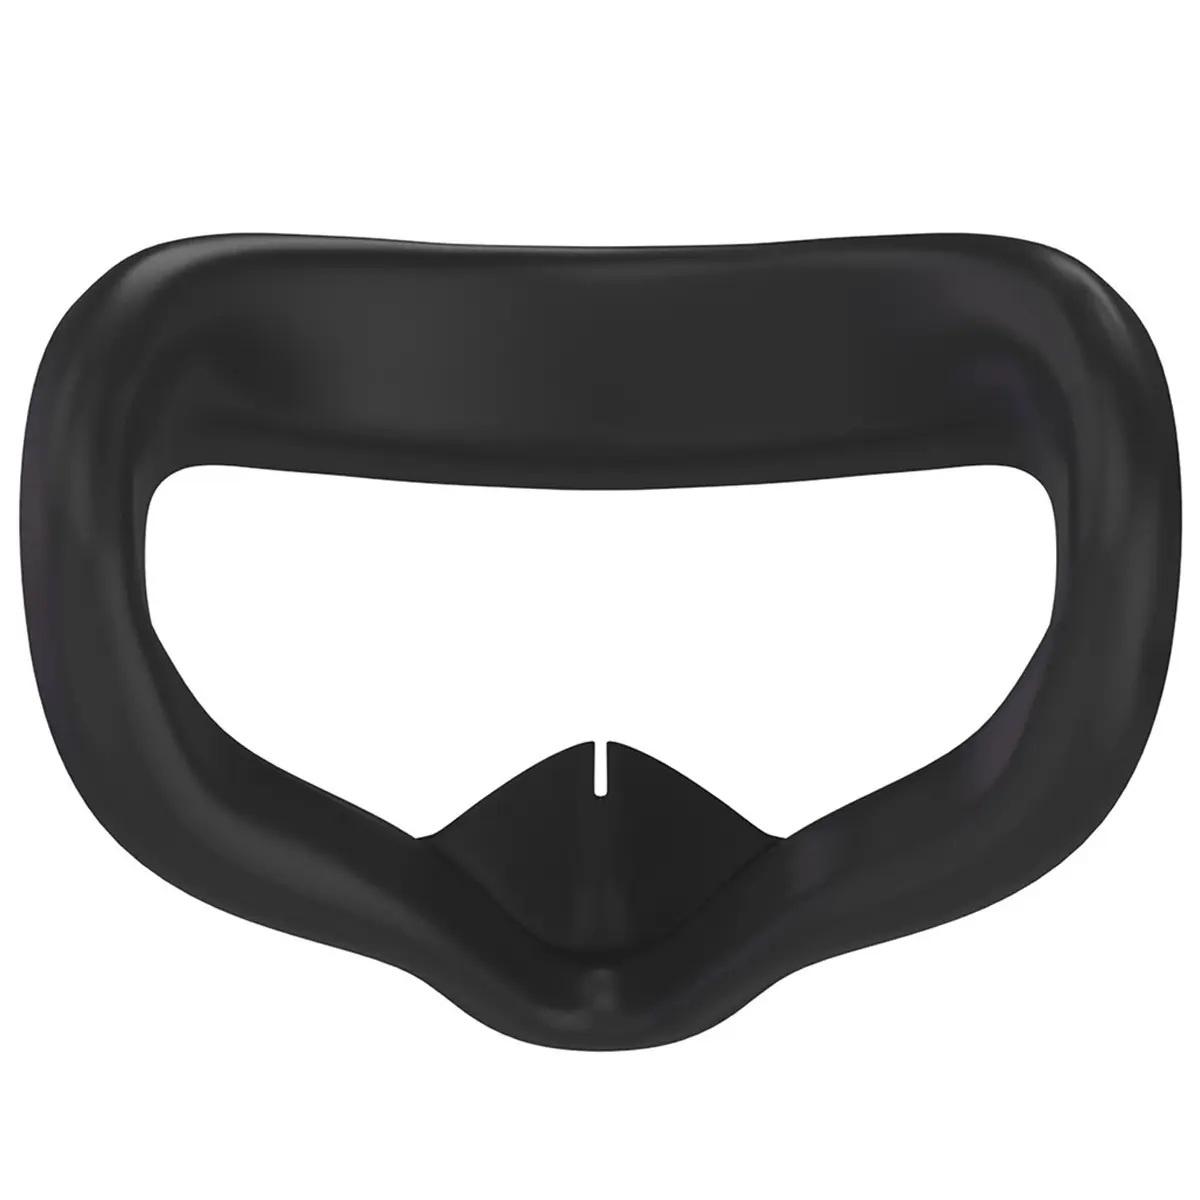 Protector de almohadilla frontal de silicona VR y cubierta antipolvo de lente para auriculares Oculus Quest 2, máscara de Ojos de silicona suave antisudor